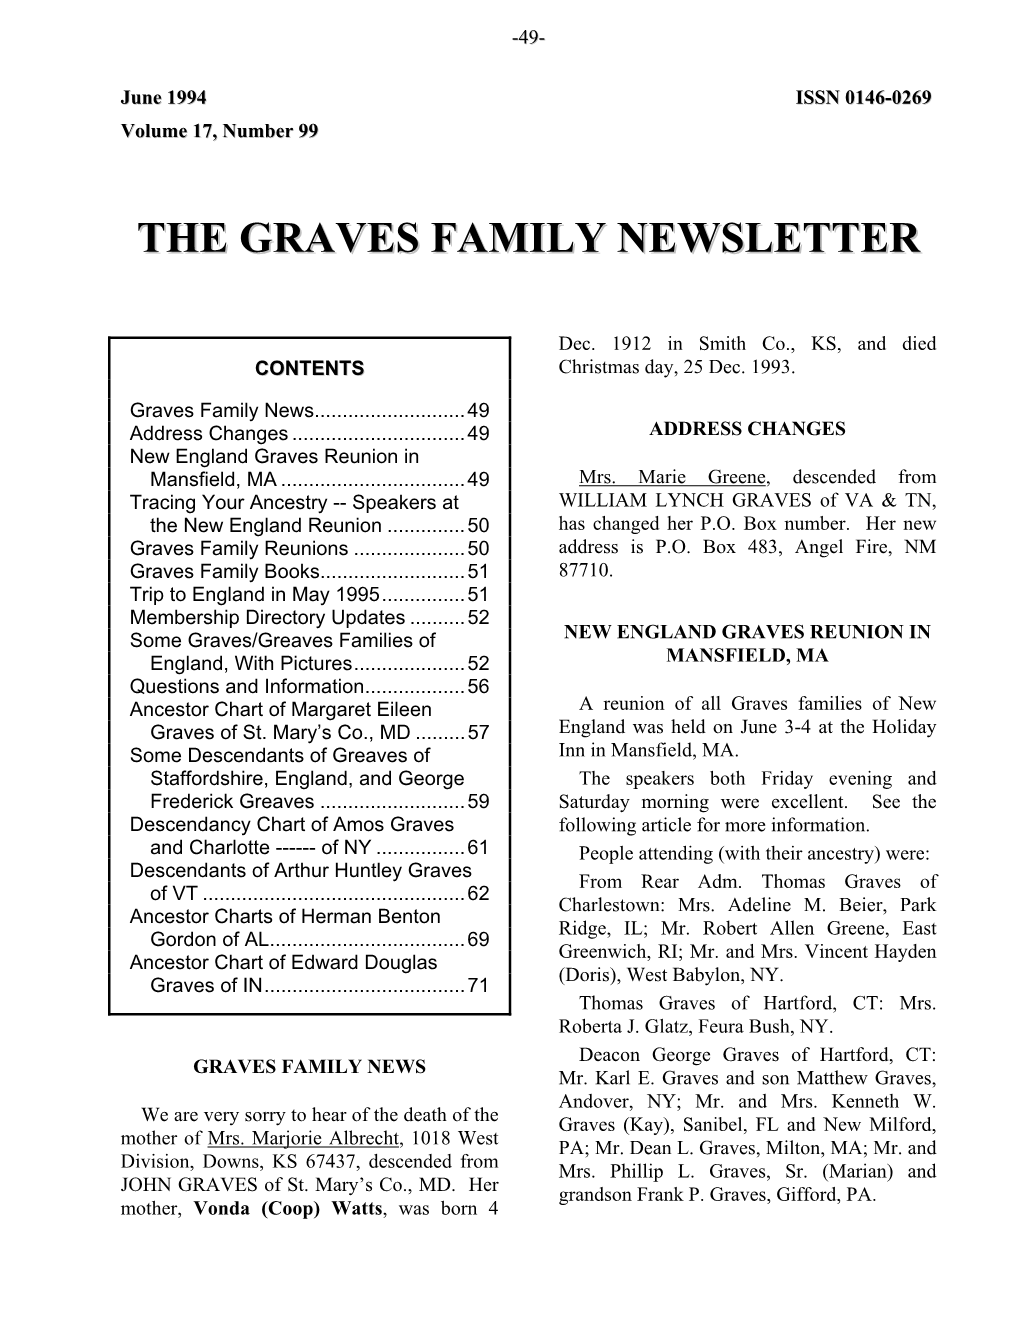 Graves Family Newsletter, June 1994